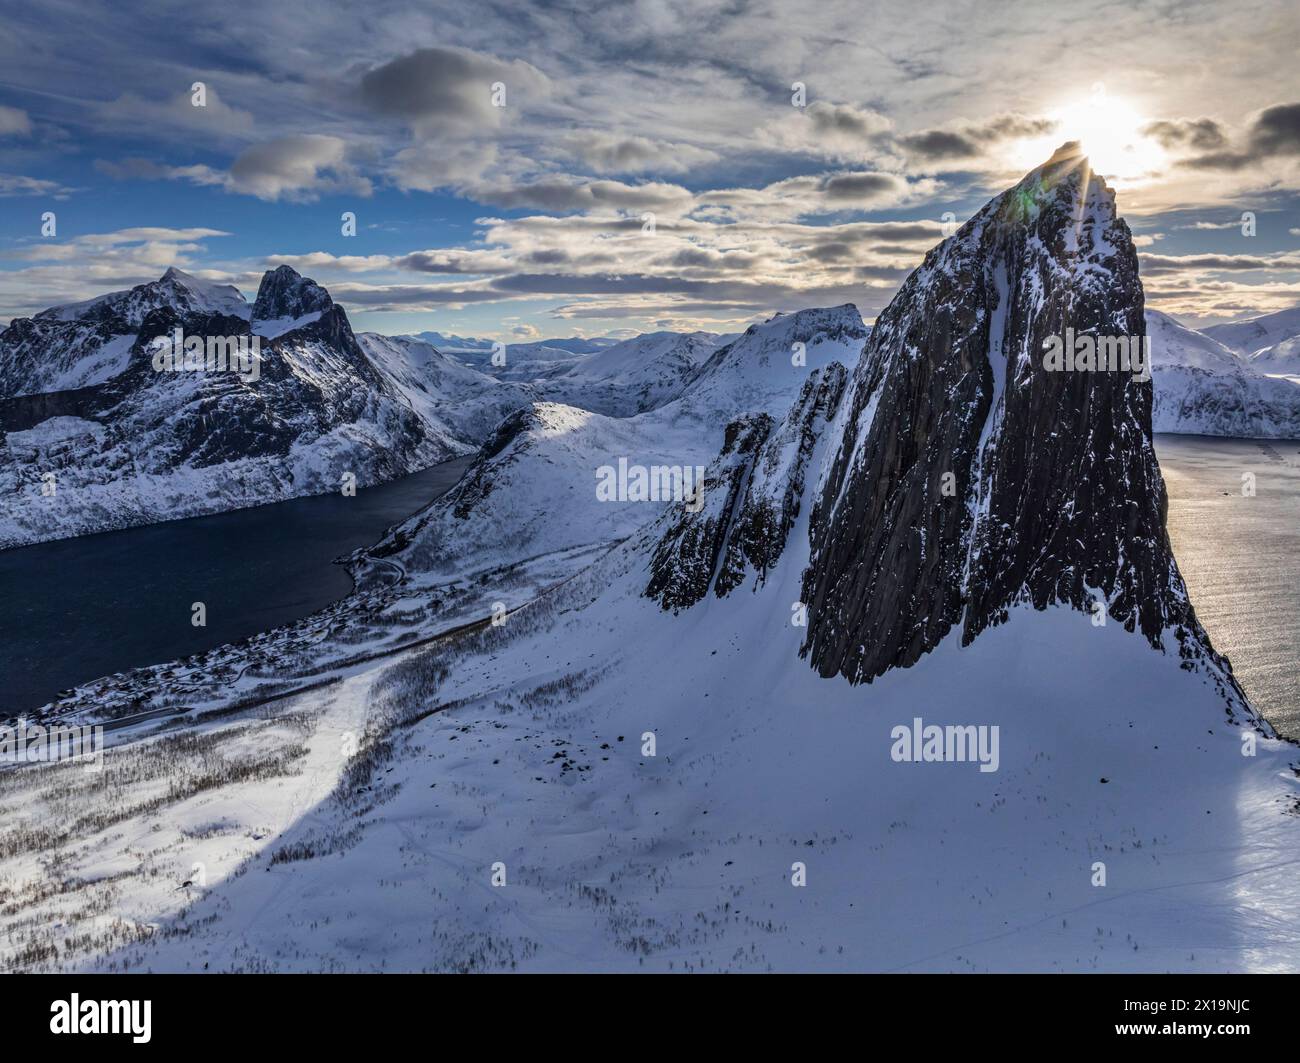 Montagnes escarpées à la côte en hiver, ensoleillé, Mont Segla, Senja, Troms, Norvège, Europe Banque D'Images